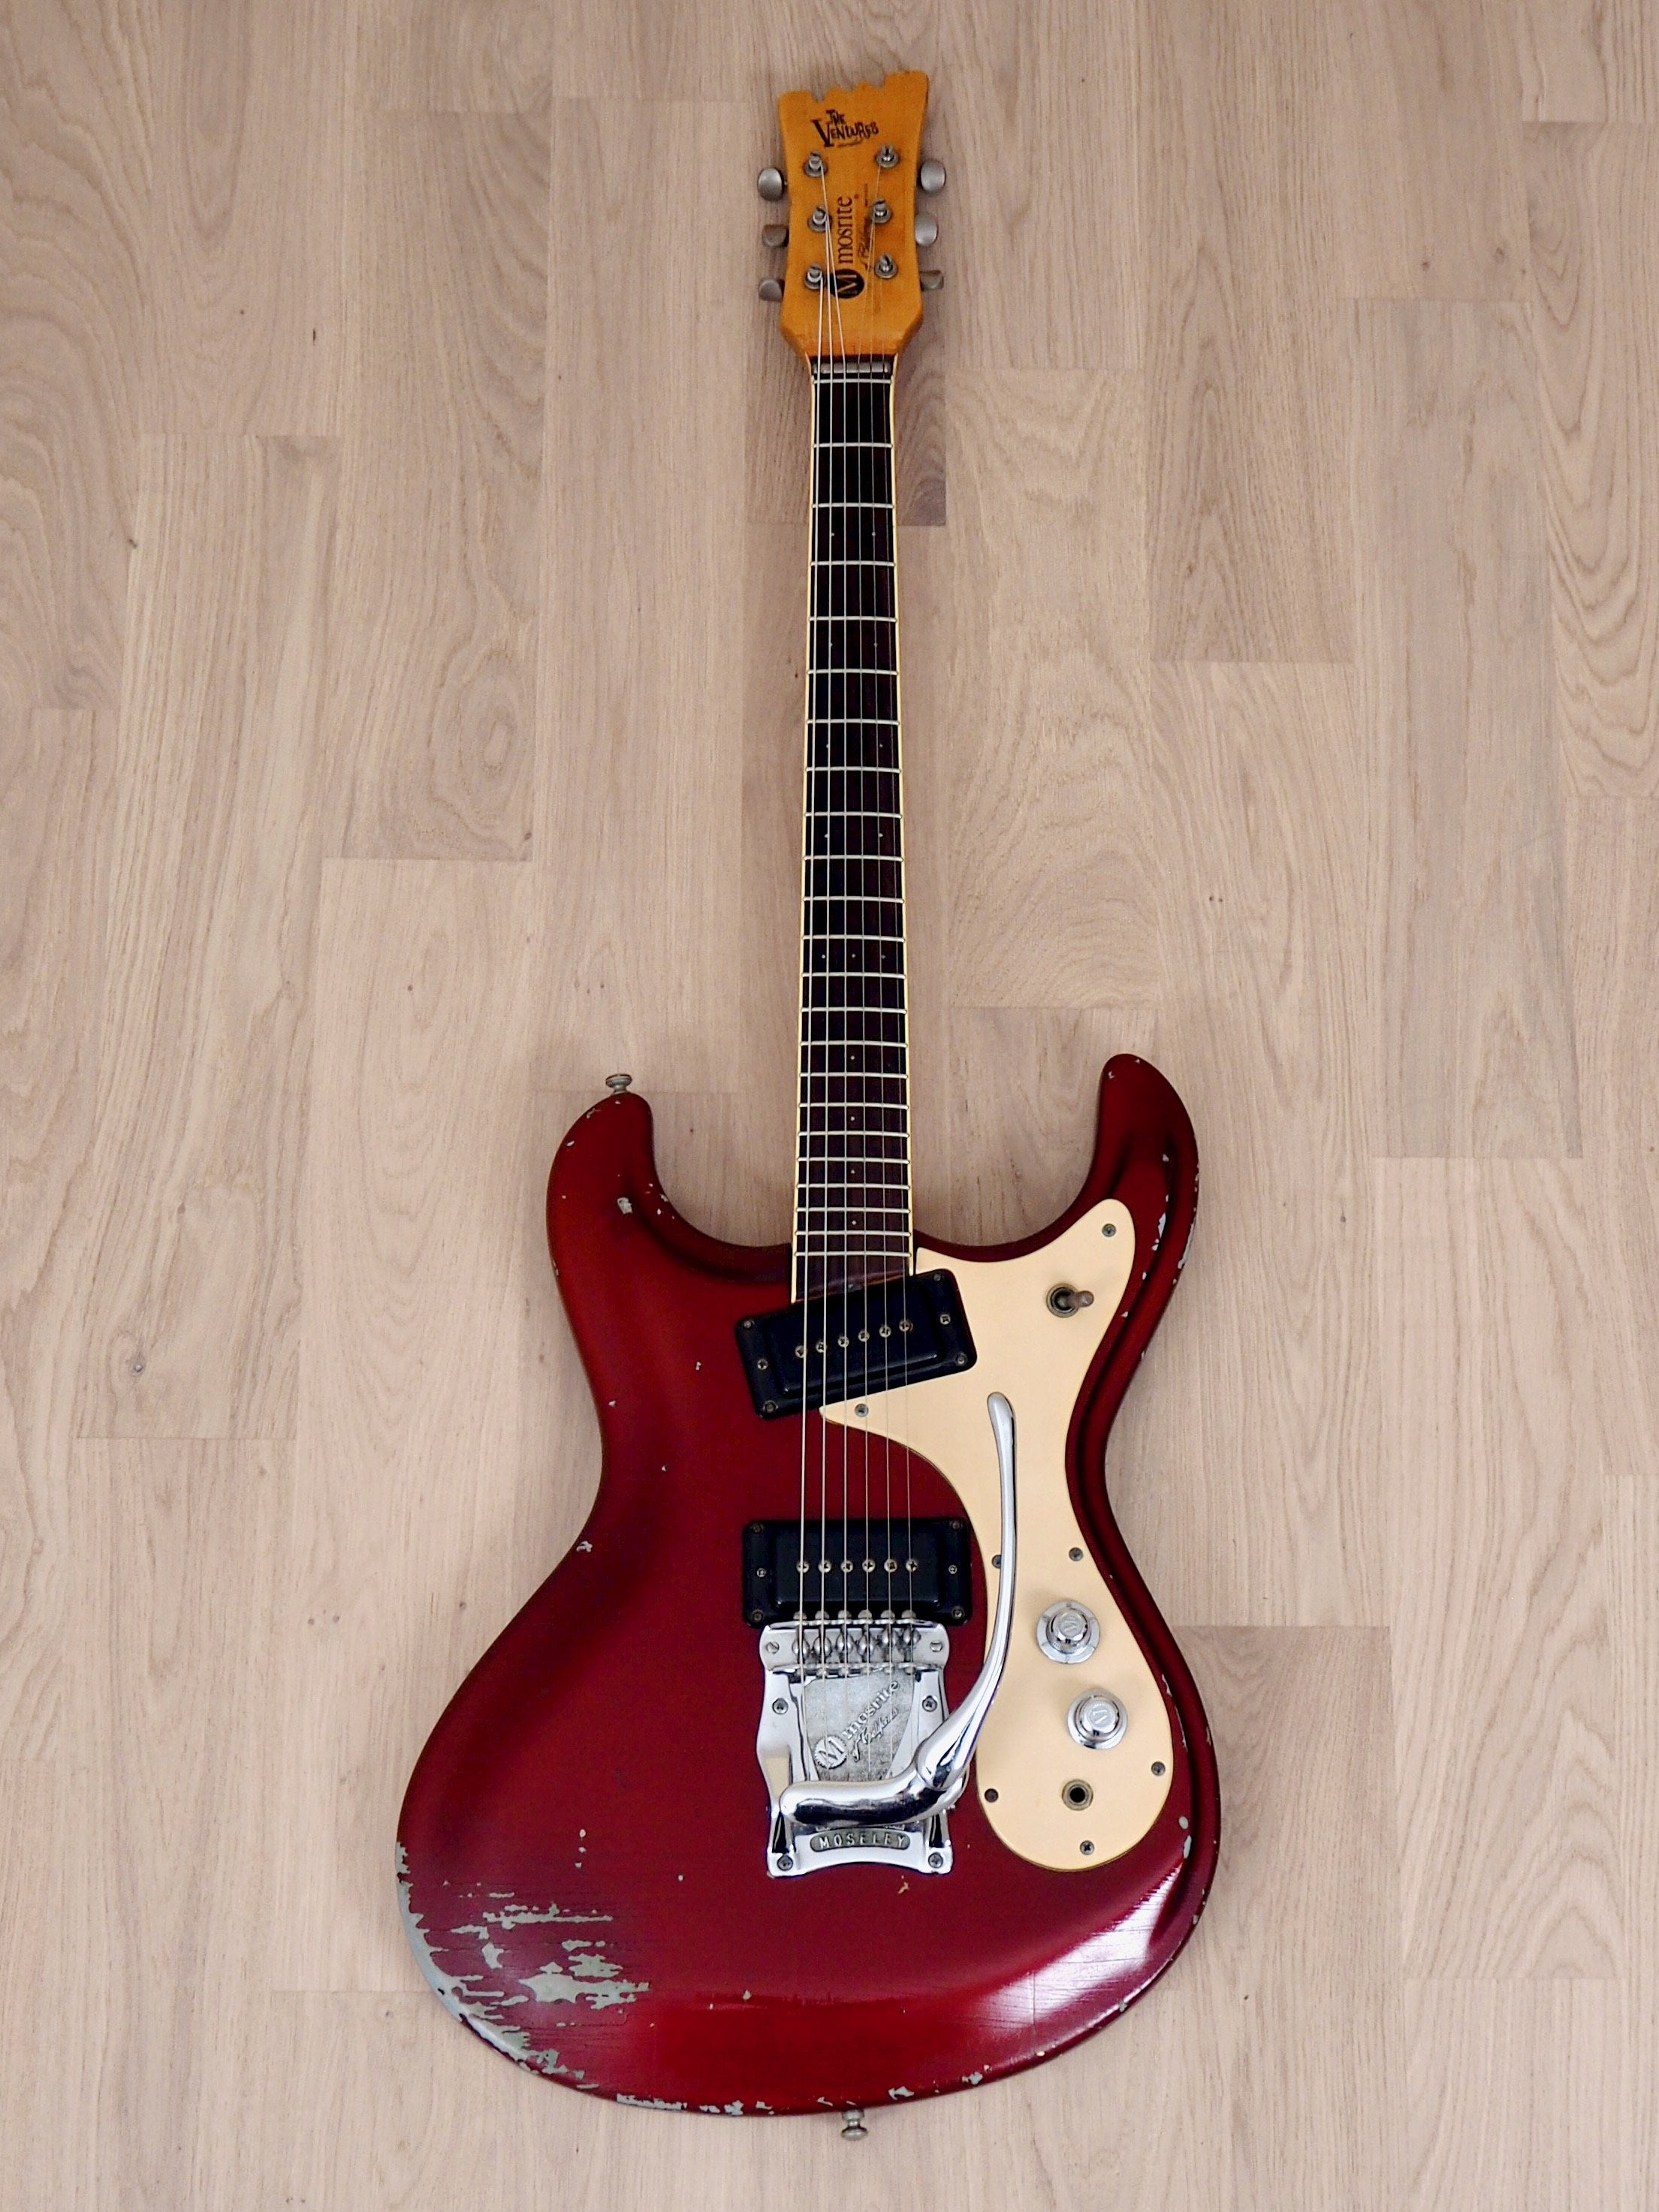 1978 Mosrite Ventures Model Mark I Vintage Electric Guitar, Candy Apple Red, USA-Made